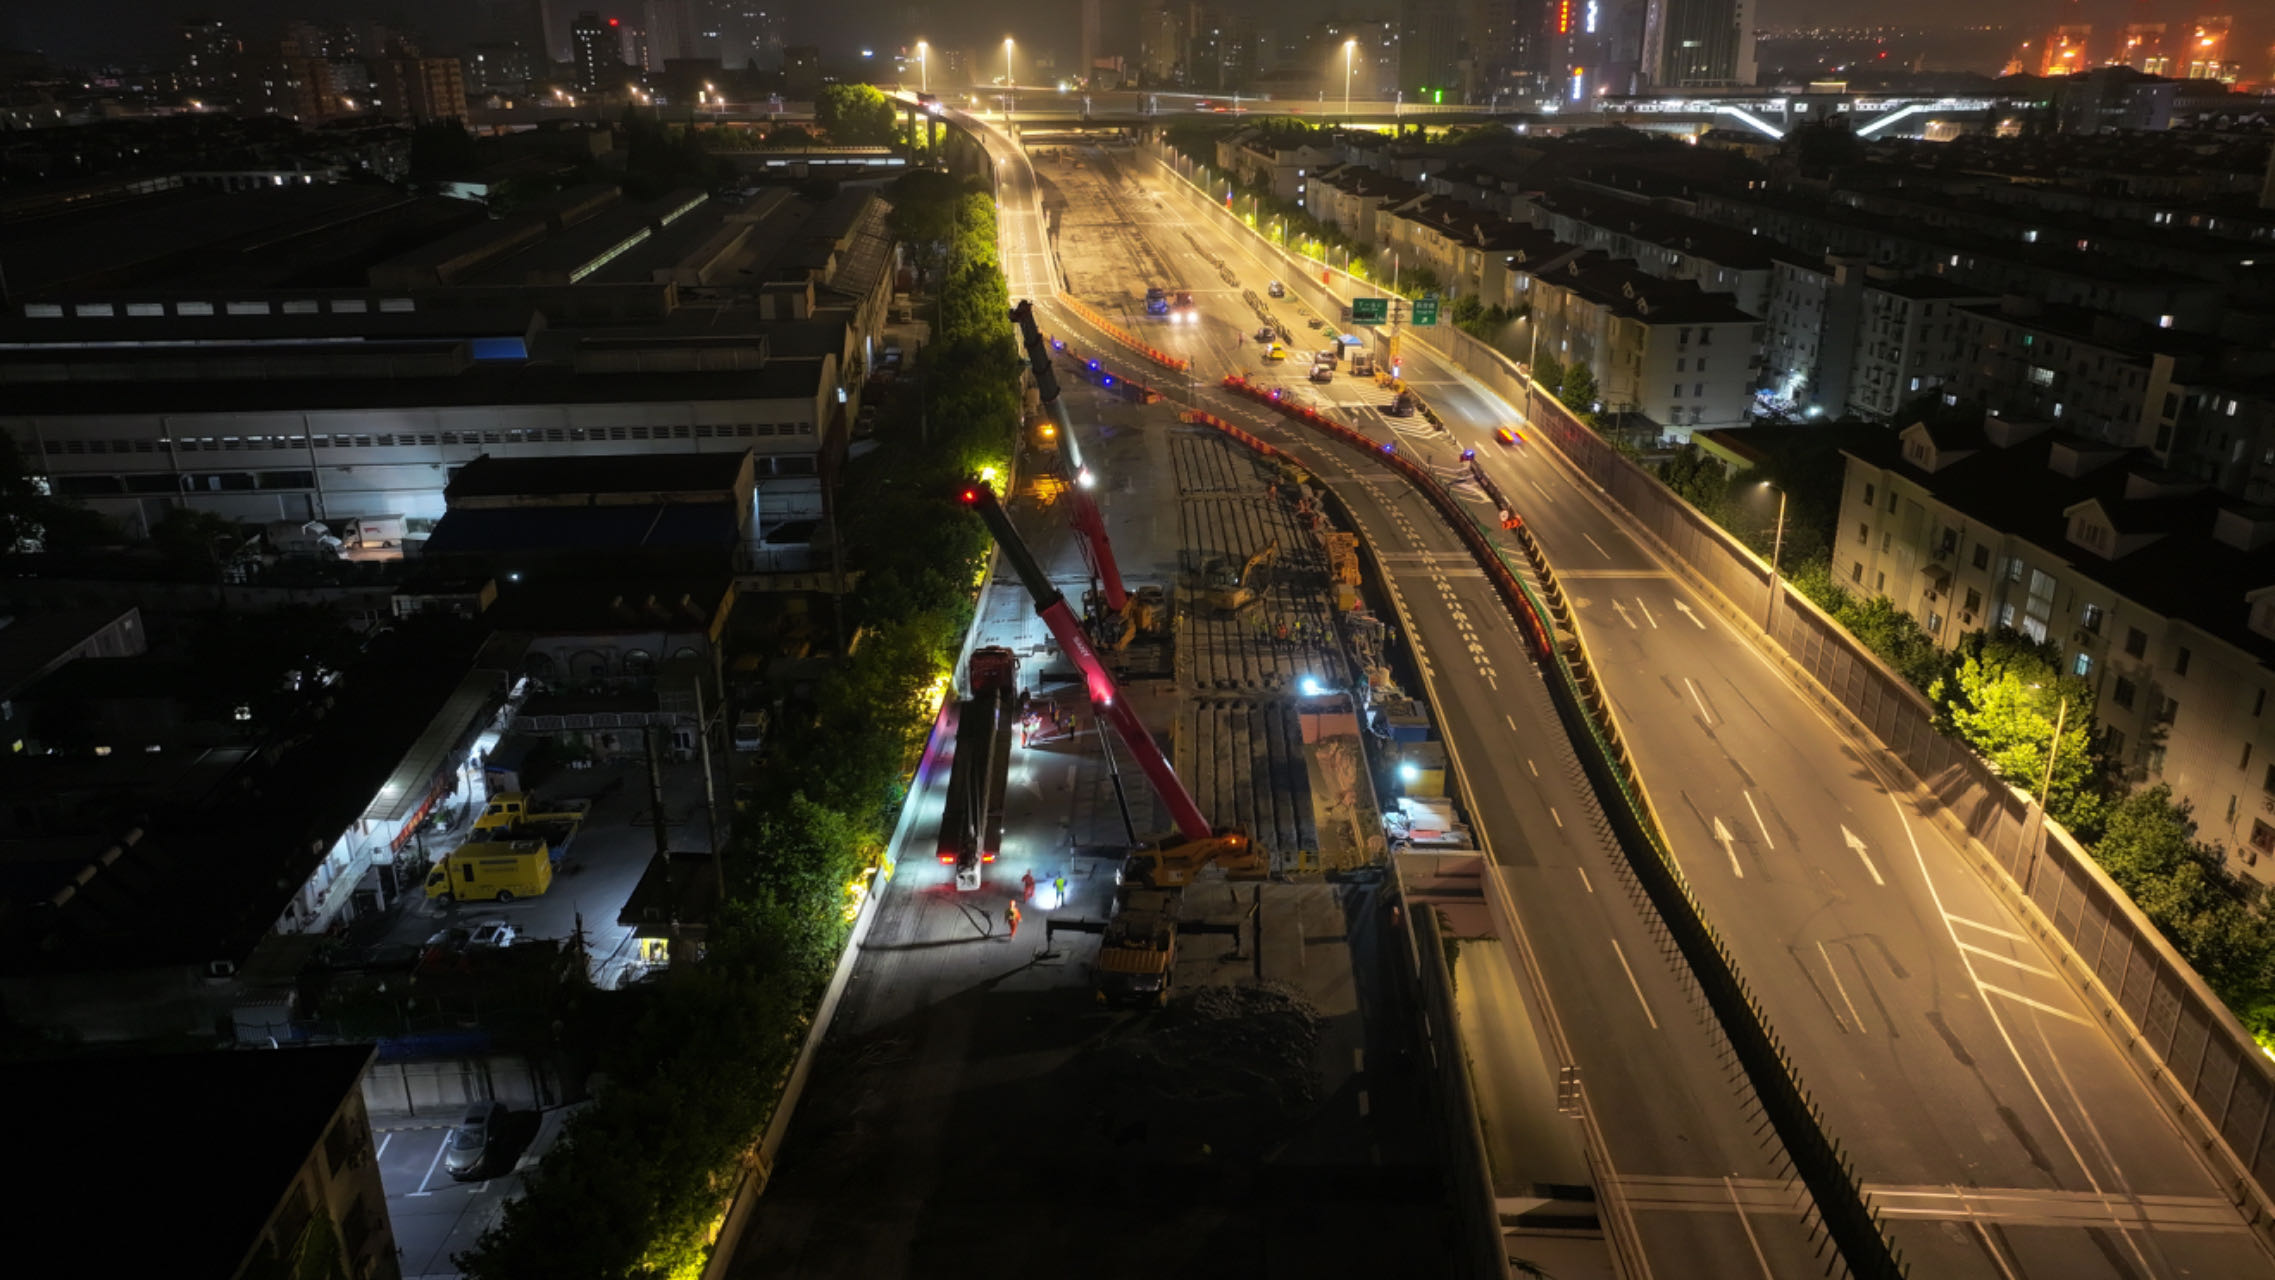 上海s20外环泰和路高架桥主体结构全面大修,先修外圈后修内圈